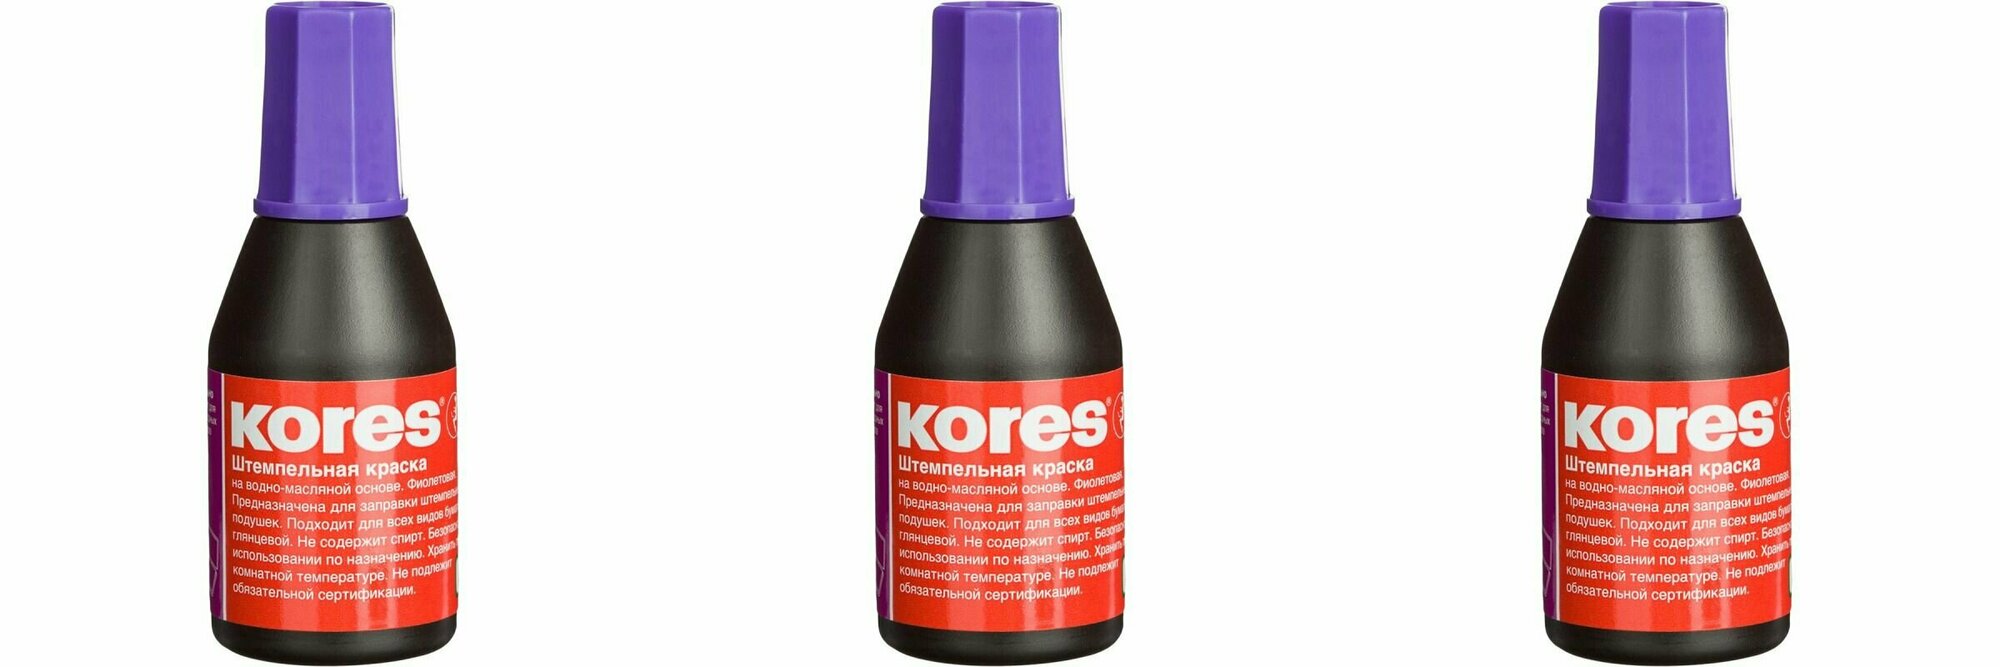 Kores/ Краска штемпельная фиолетовая, 28 гр, 3 шт